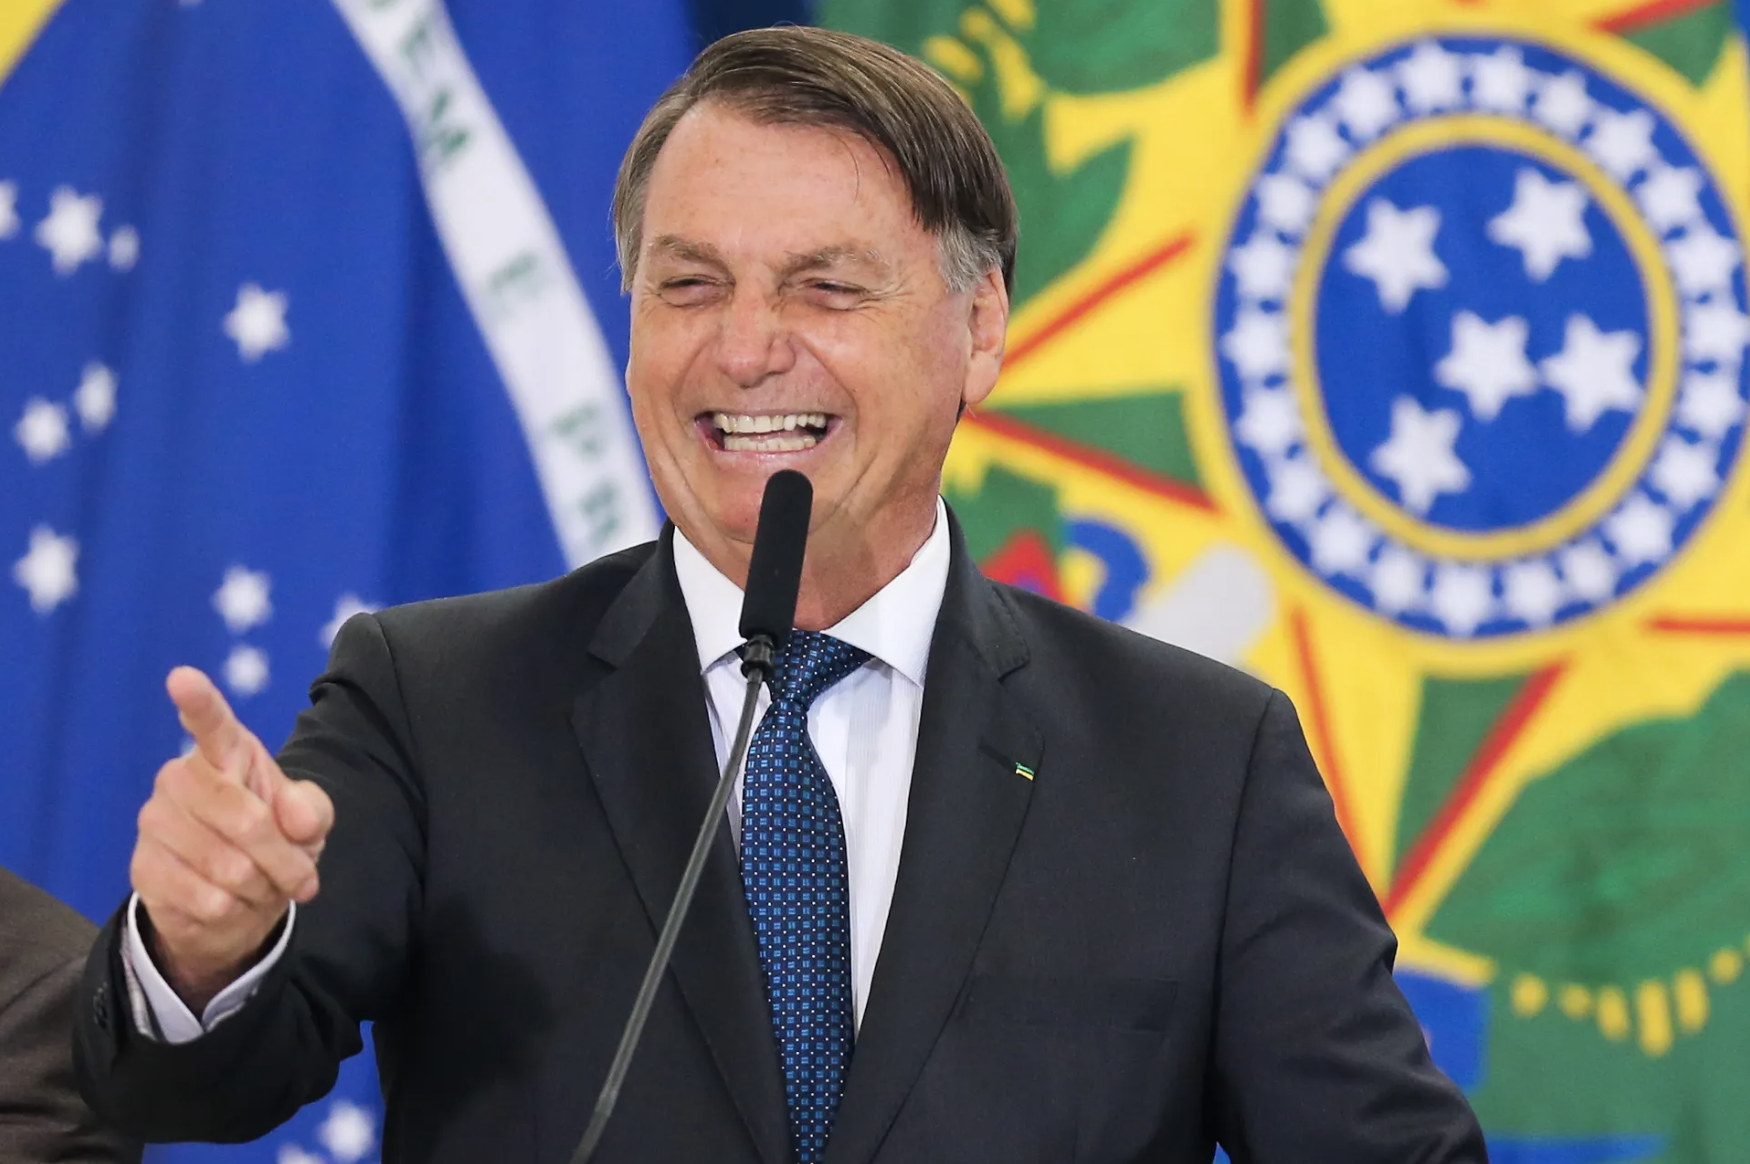 Ex-presidente da República, Jair Bolsonaro, em evento público em dezembro de 2020